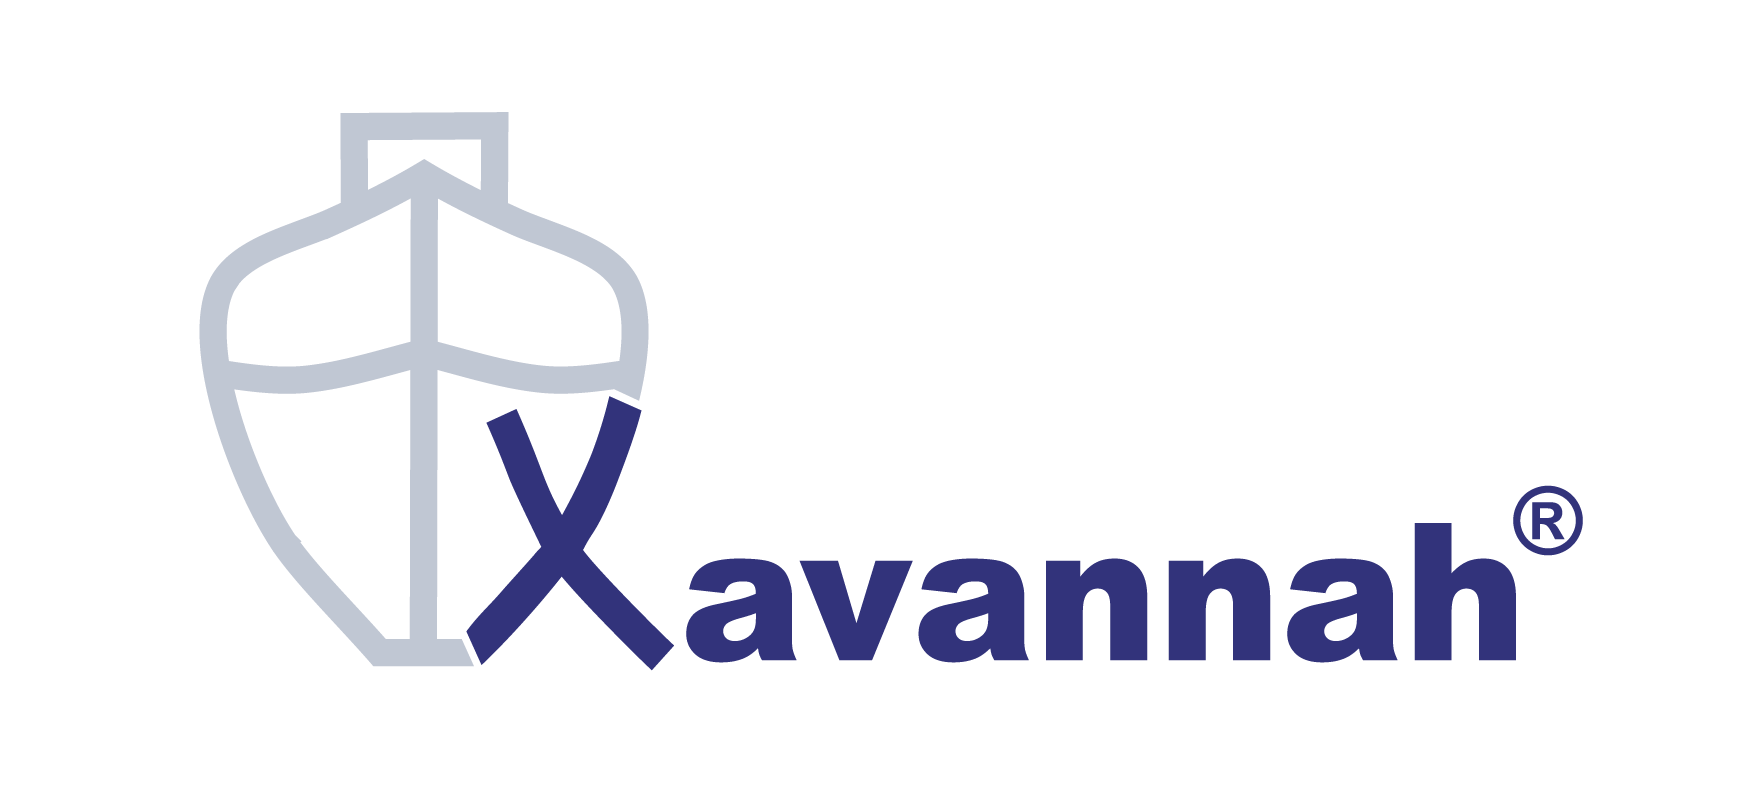 (c) Xavannah.com